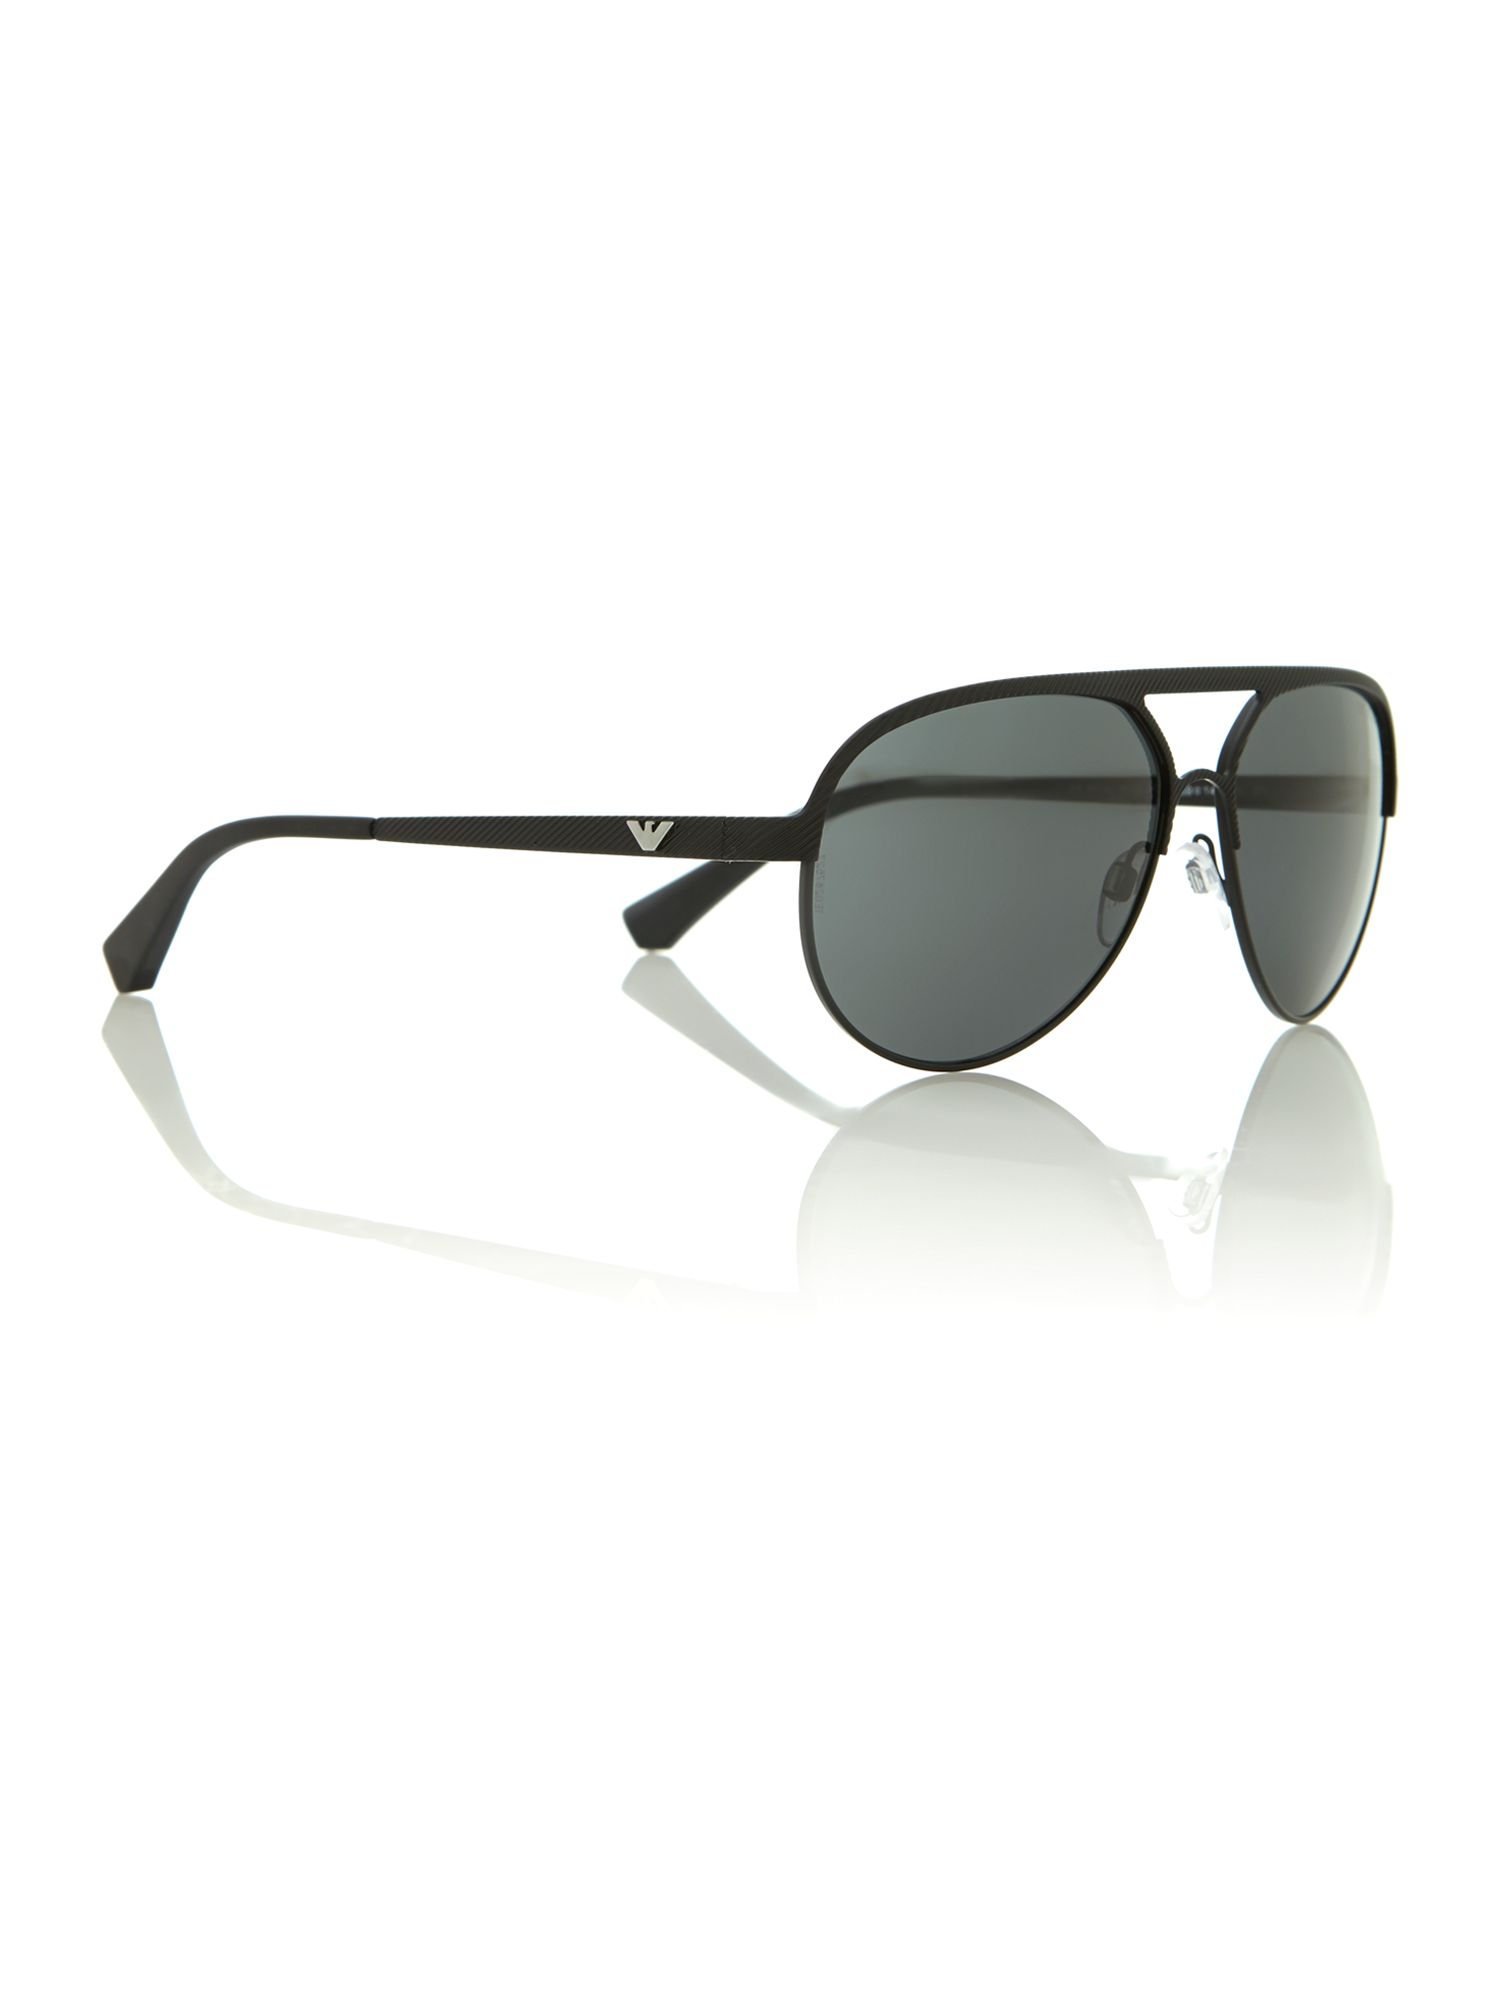 Emporio Armani Mens Sunglasses in Black | Lyst